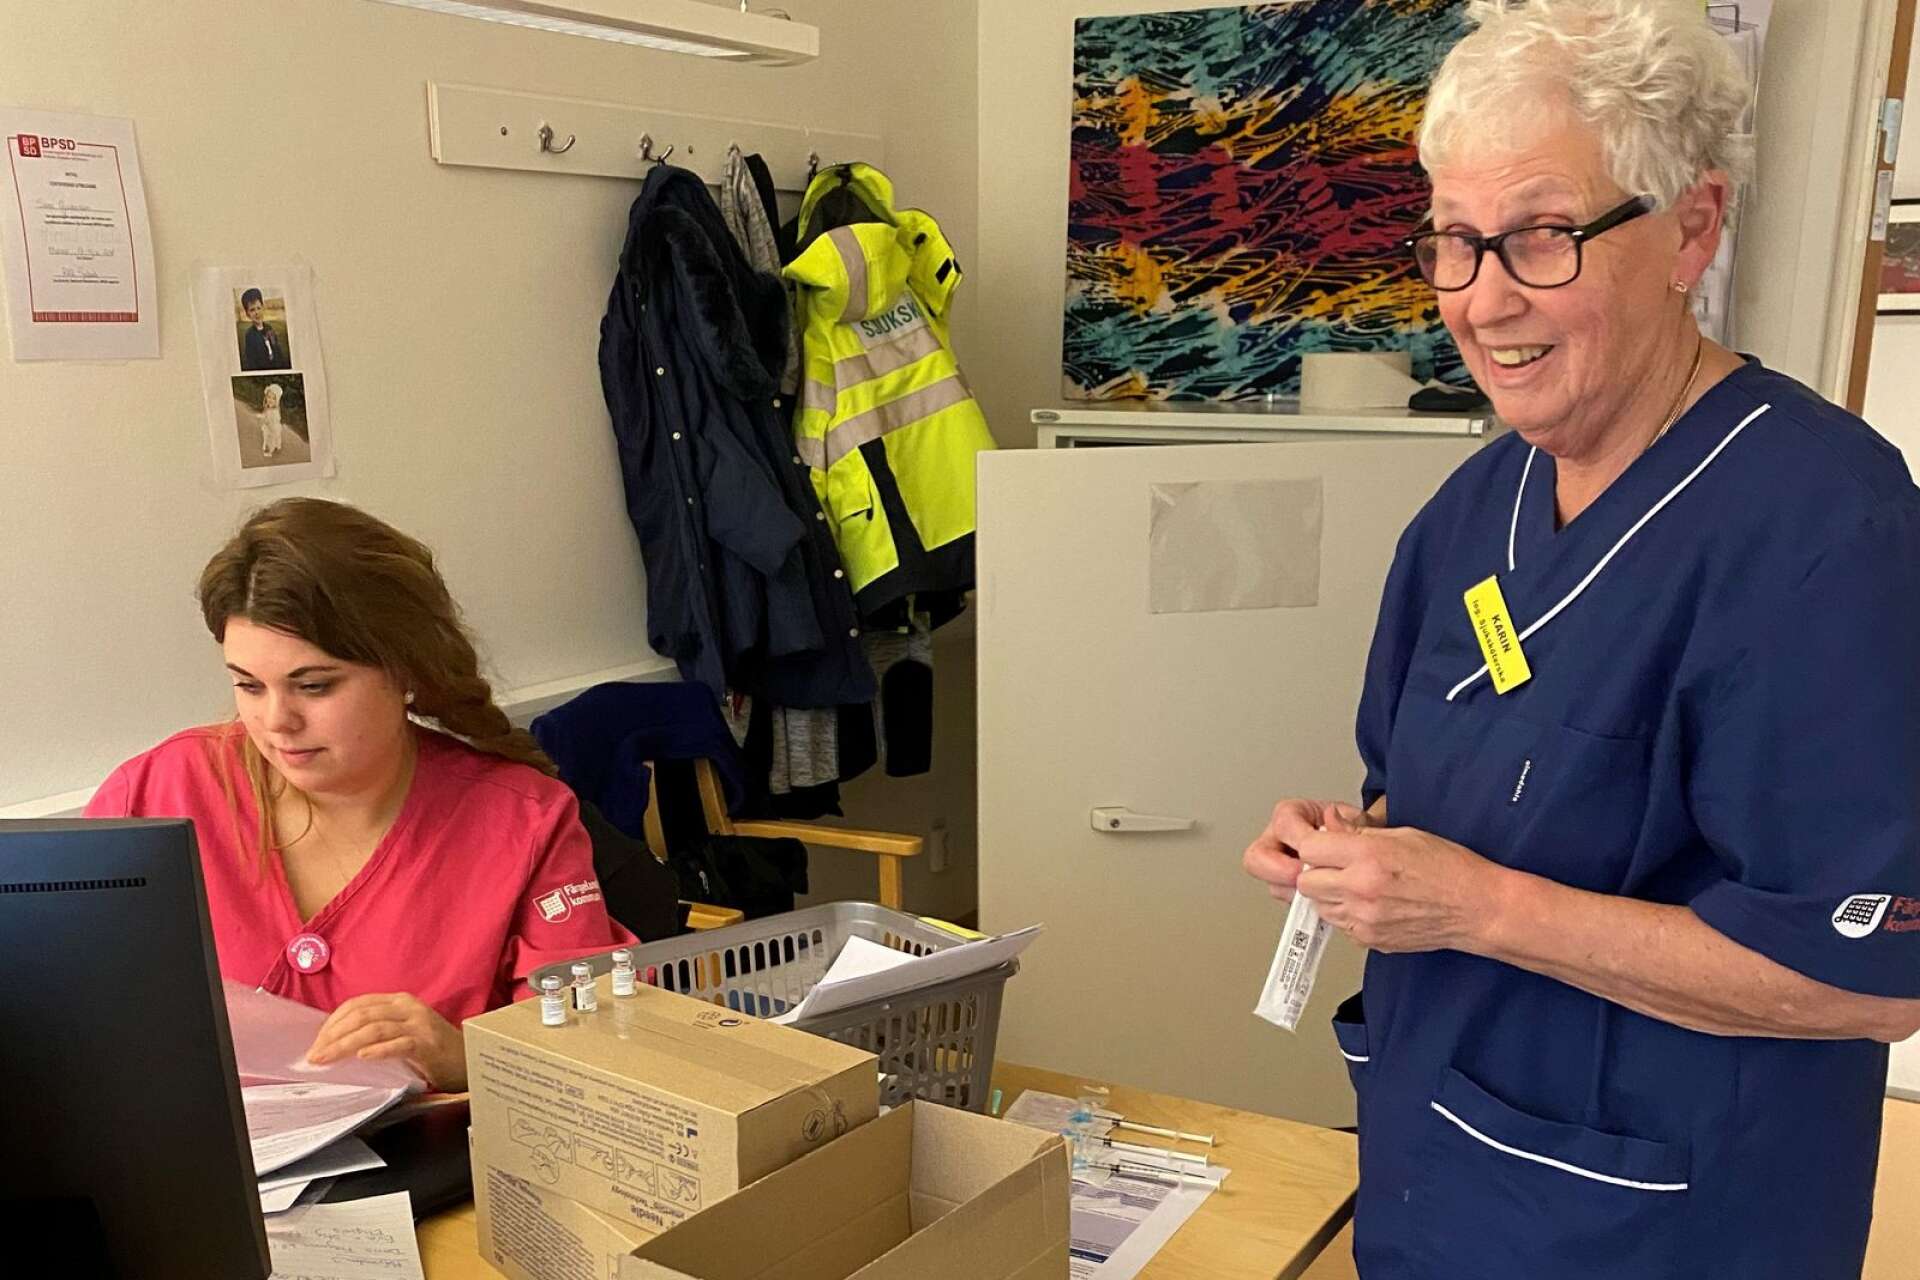 Sjuksköterskorna Karin Bärtzner och Sara Gustafsson vaccinerade under hela förmiddagen omsorgstagare på Håvestensgårdens särskilda boende. Där har nu alla 30 omsorgstagare fått sina vaccin. 